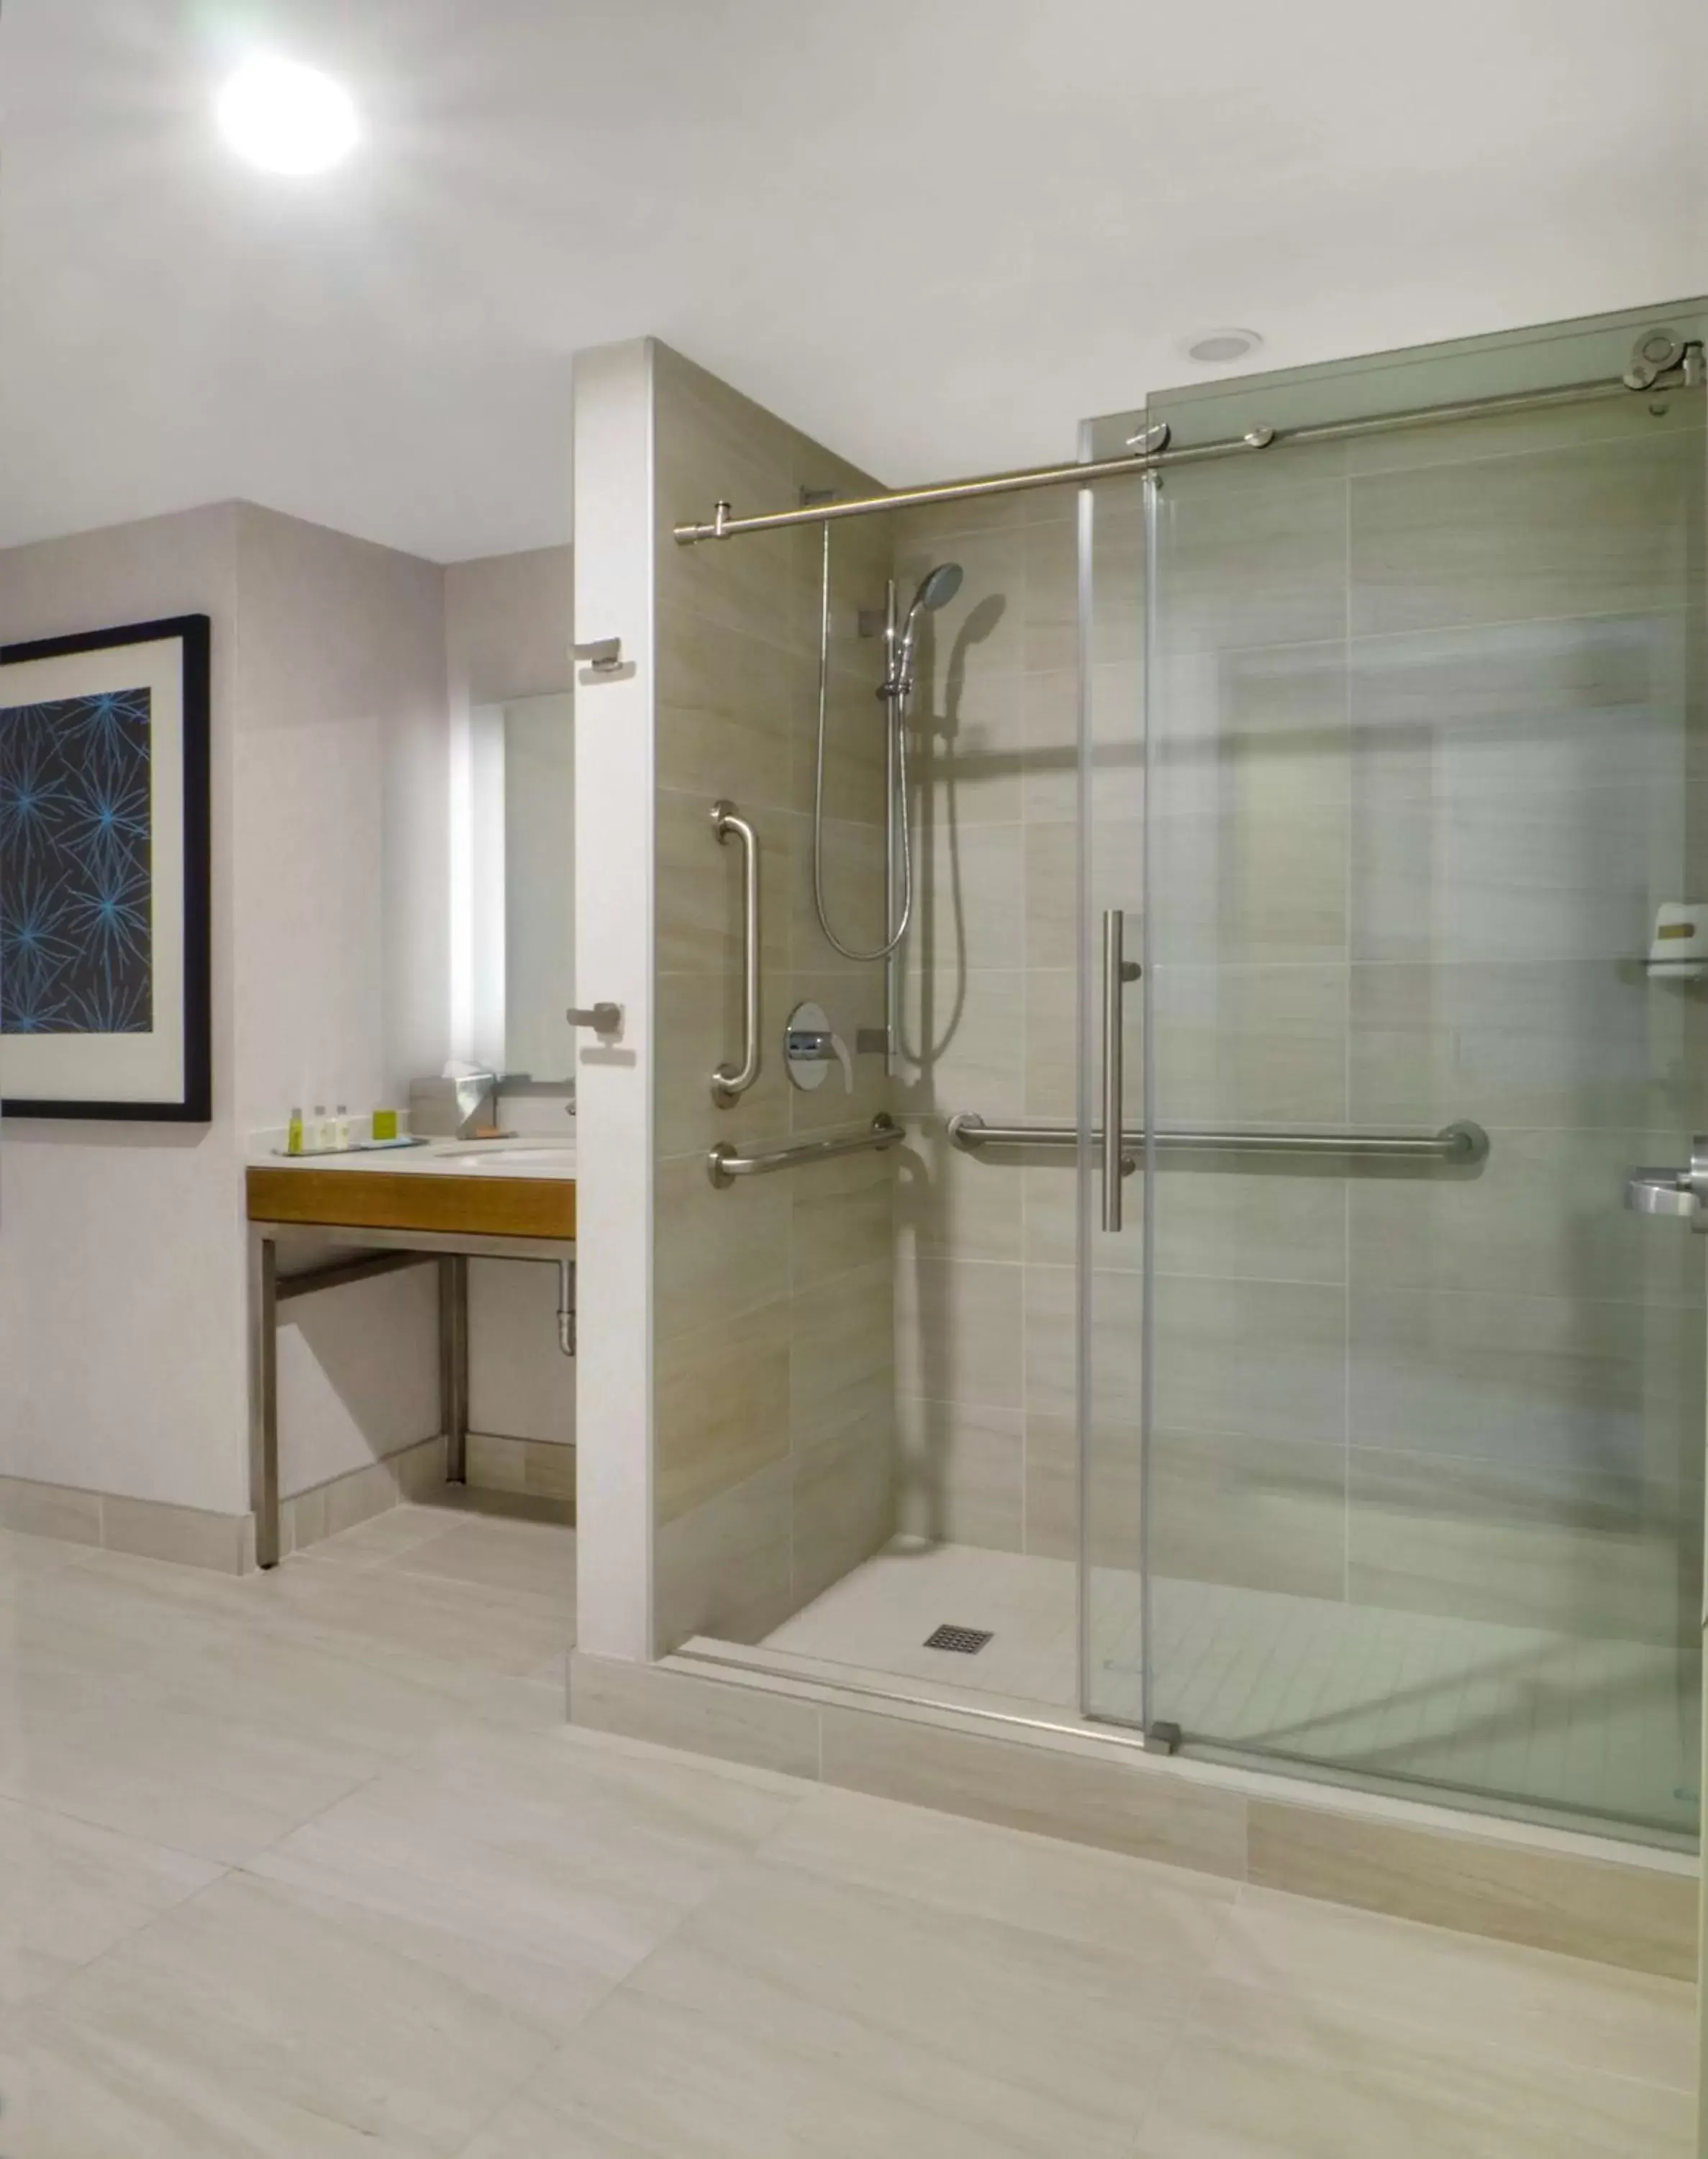 Bathroom in DoubleTree by Hilton Hotel Niagara Falls New York